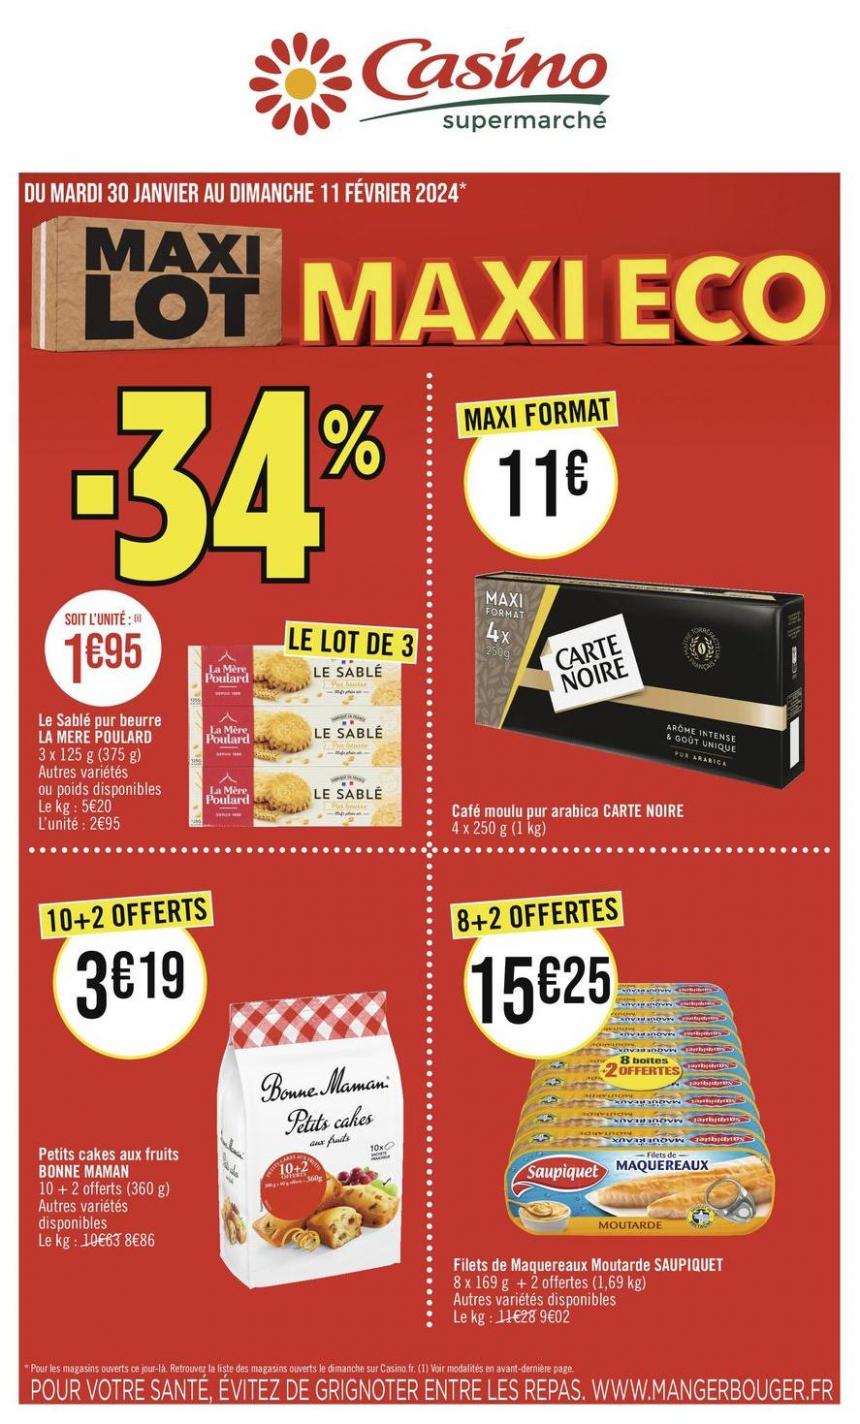 Maxi Lot Maxi Eco. Casino Supermarchés (2024-02-11-2024-02-11)